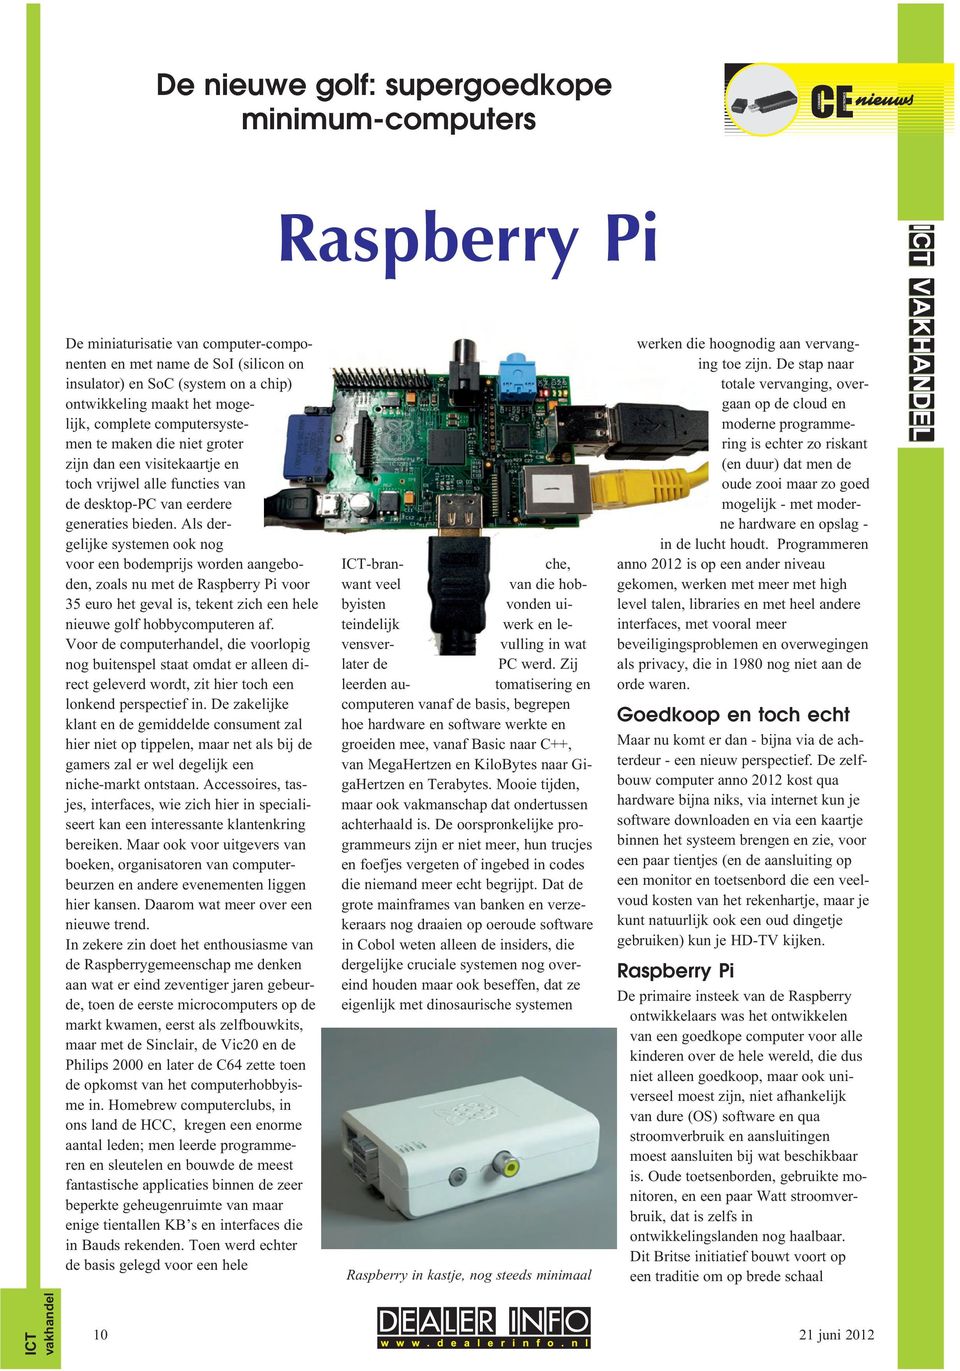 Als dergelijke systemen ook nog voor een bodemprijs worden aangeboden, zoals nu met de Raspberry Pi voor 35 euro het geval is, tekent zich een hele nieuwe golf hobbycomputeren af.